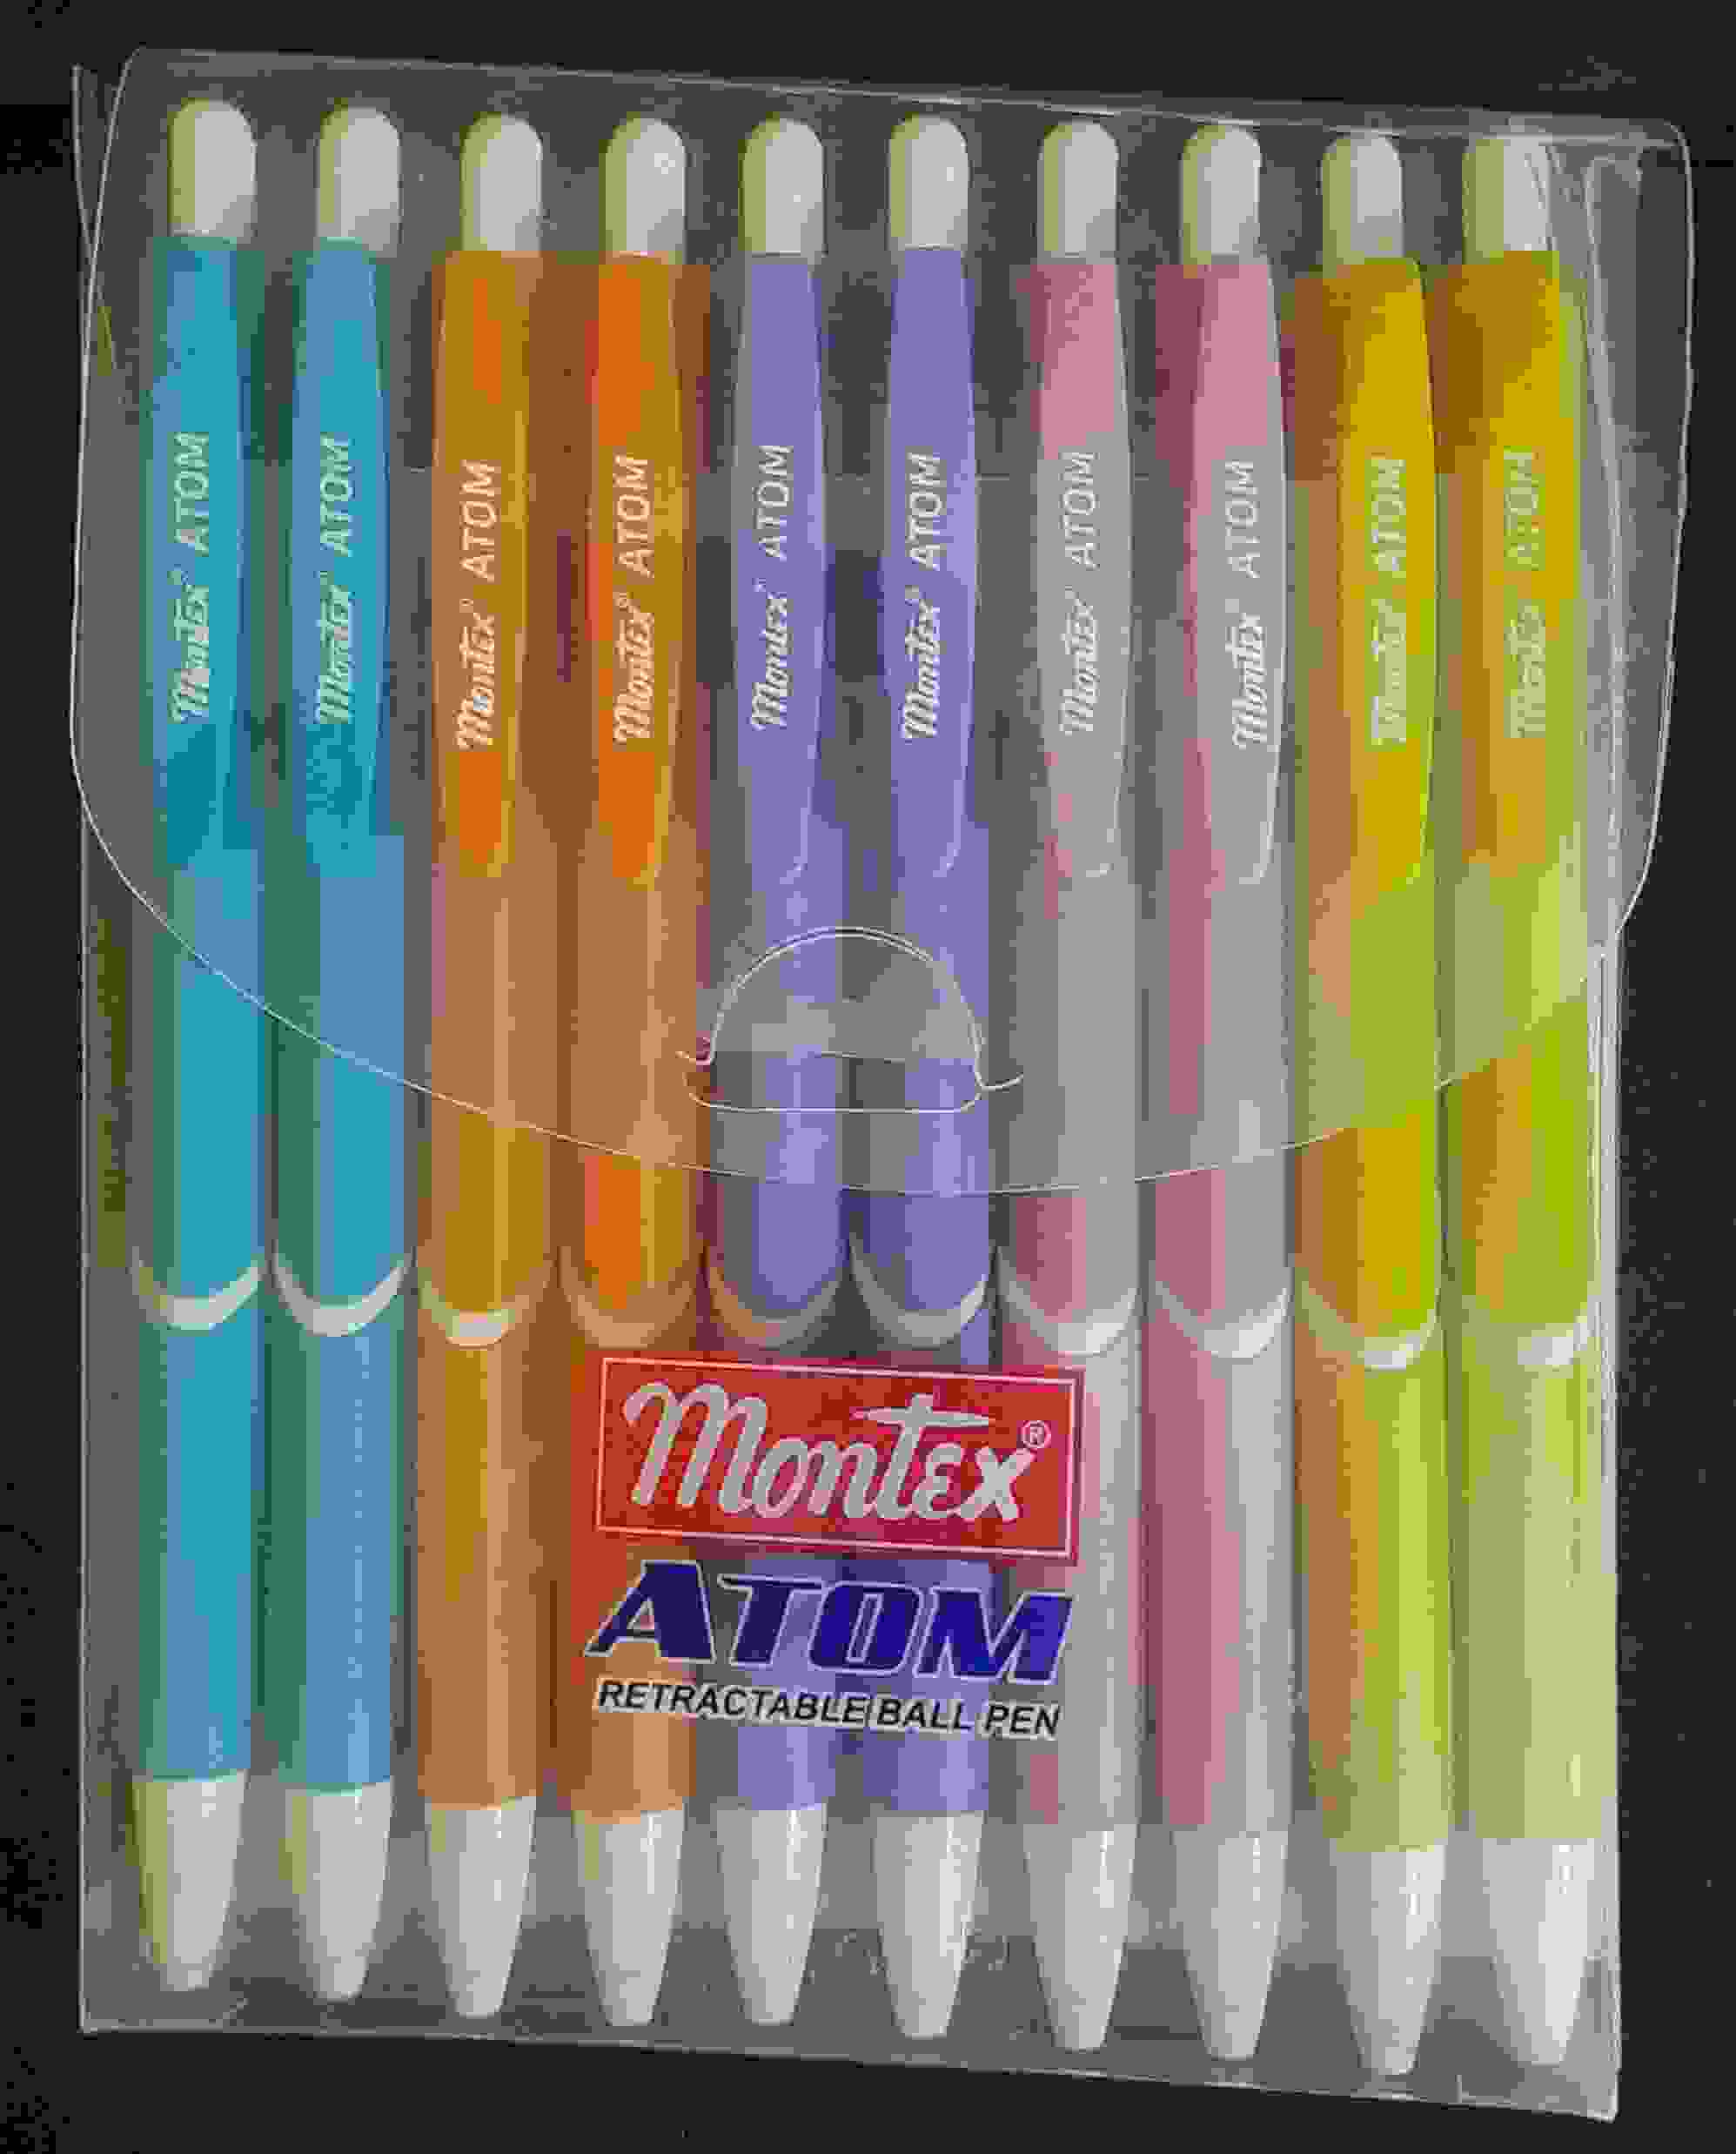 Ball Pen Green Colour - Retractable ball pen - Montex Atom brand - Pack of 10Nos